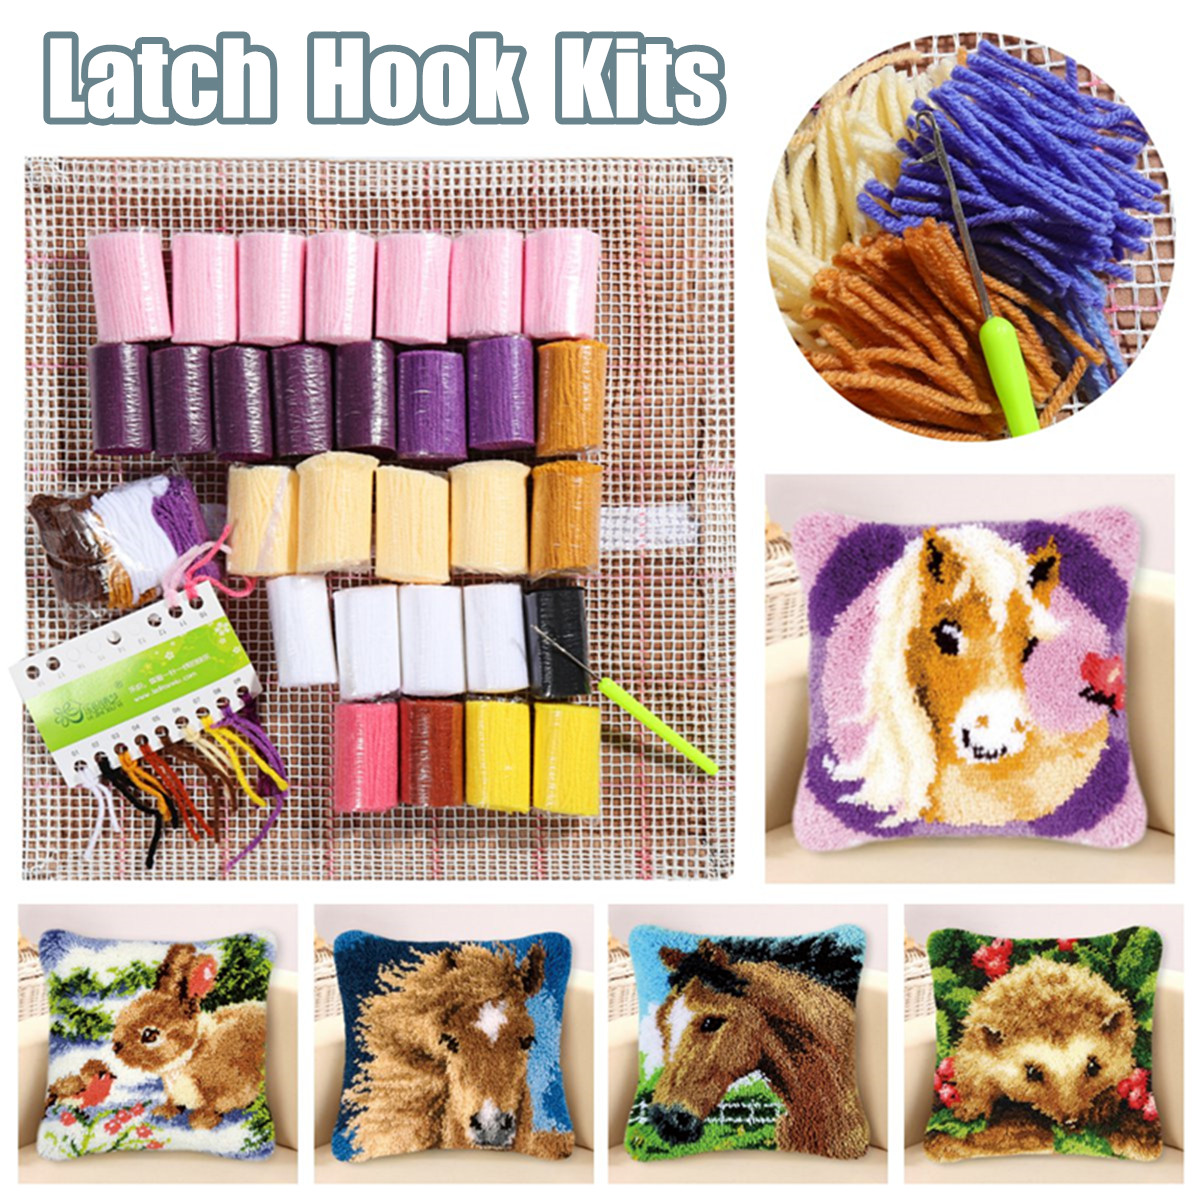 Funny-Animal-Pattern-Latch-Hook-Kit-Pillow-Case-Making-Kit-DIY-Craft-43x43cm-1643529-1